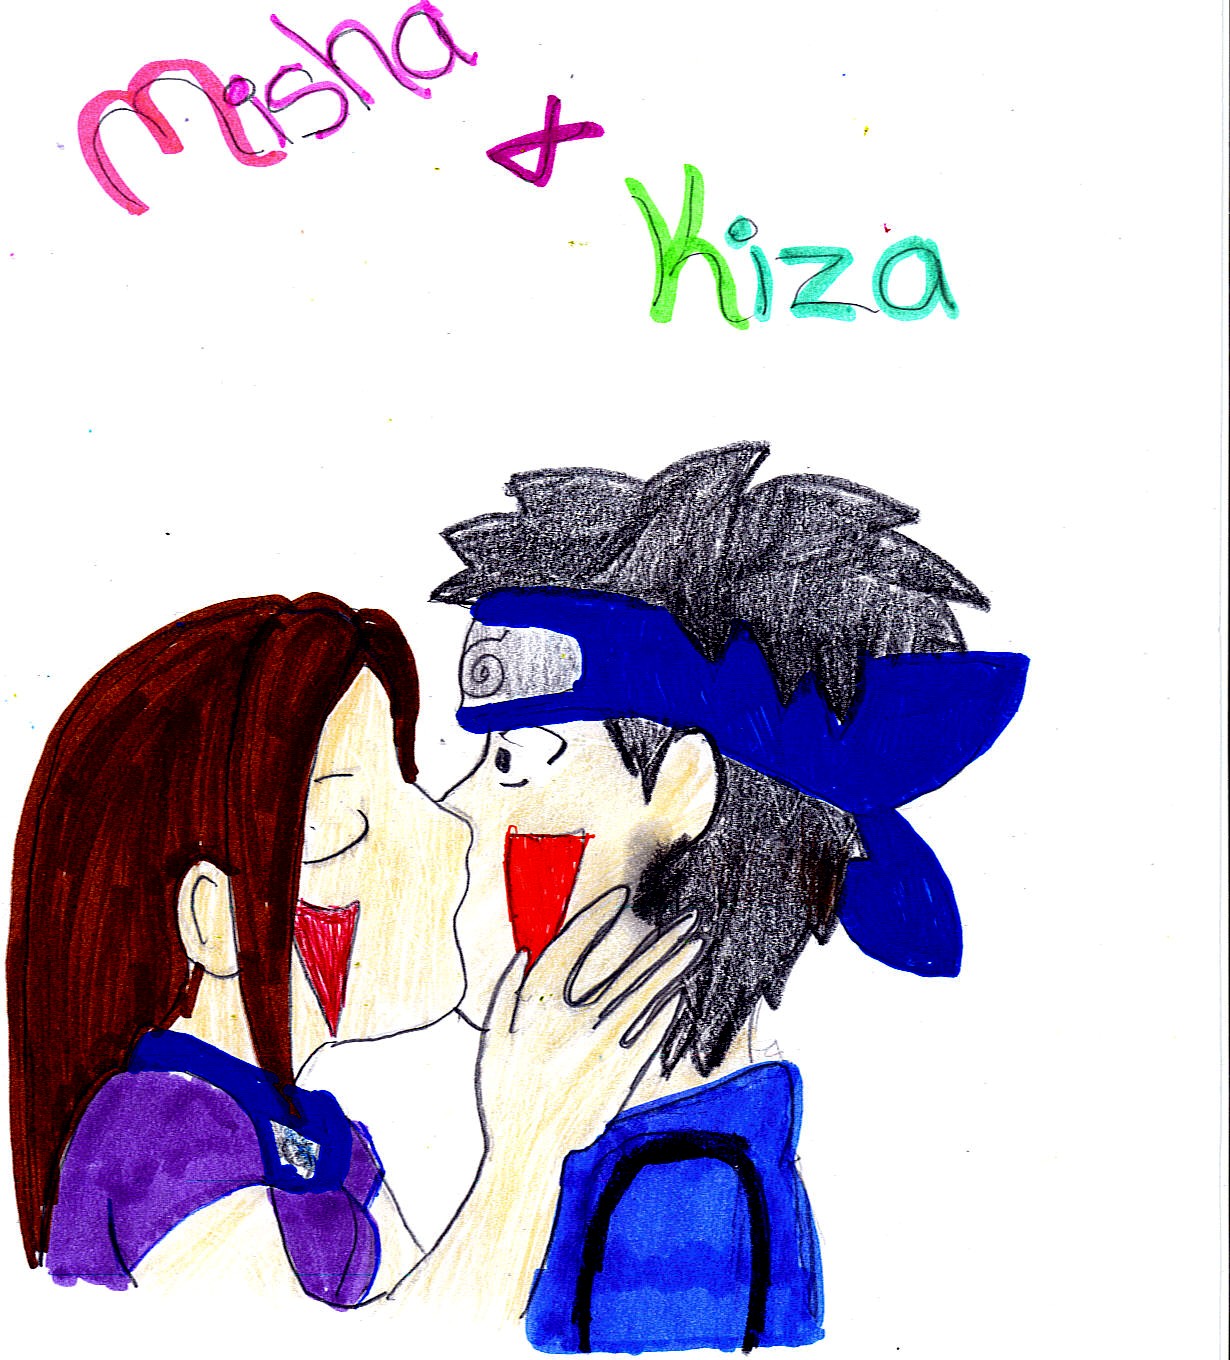 Kiza and Misha by sasukeisemo2006